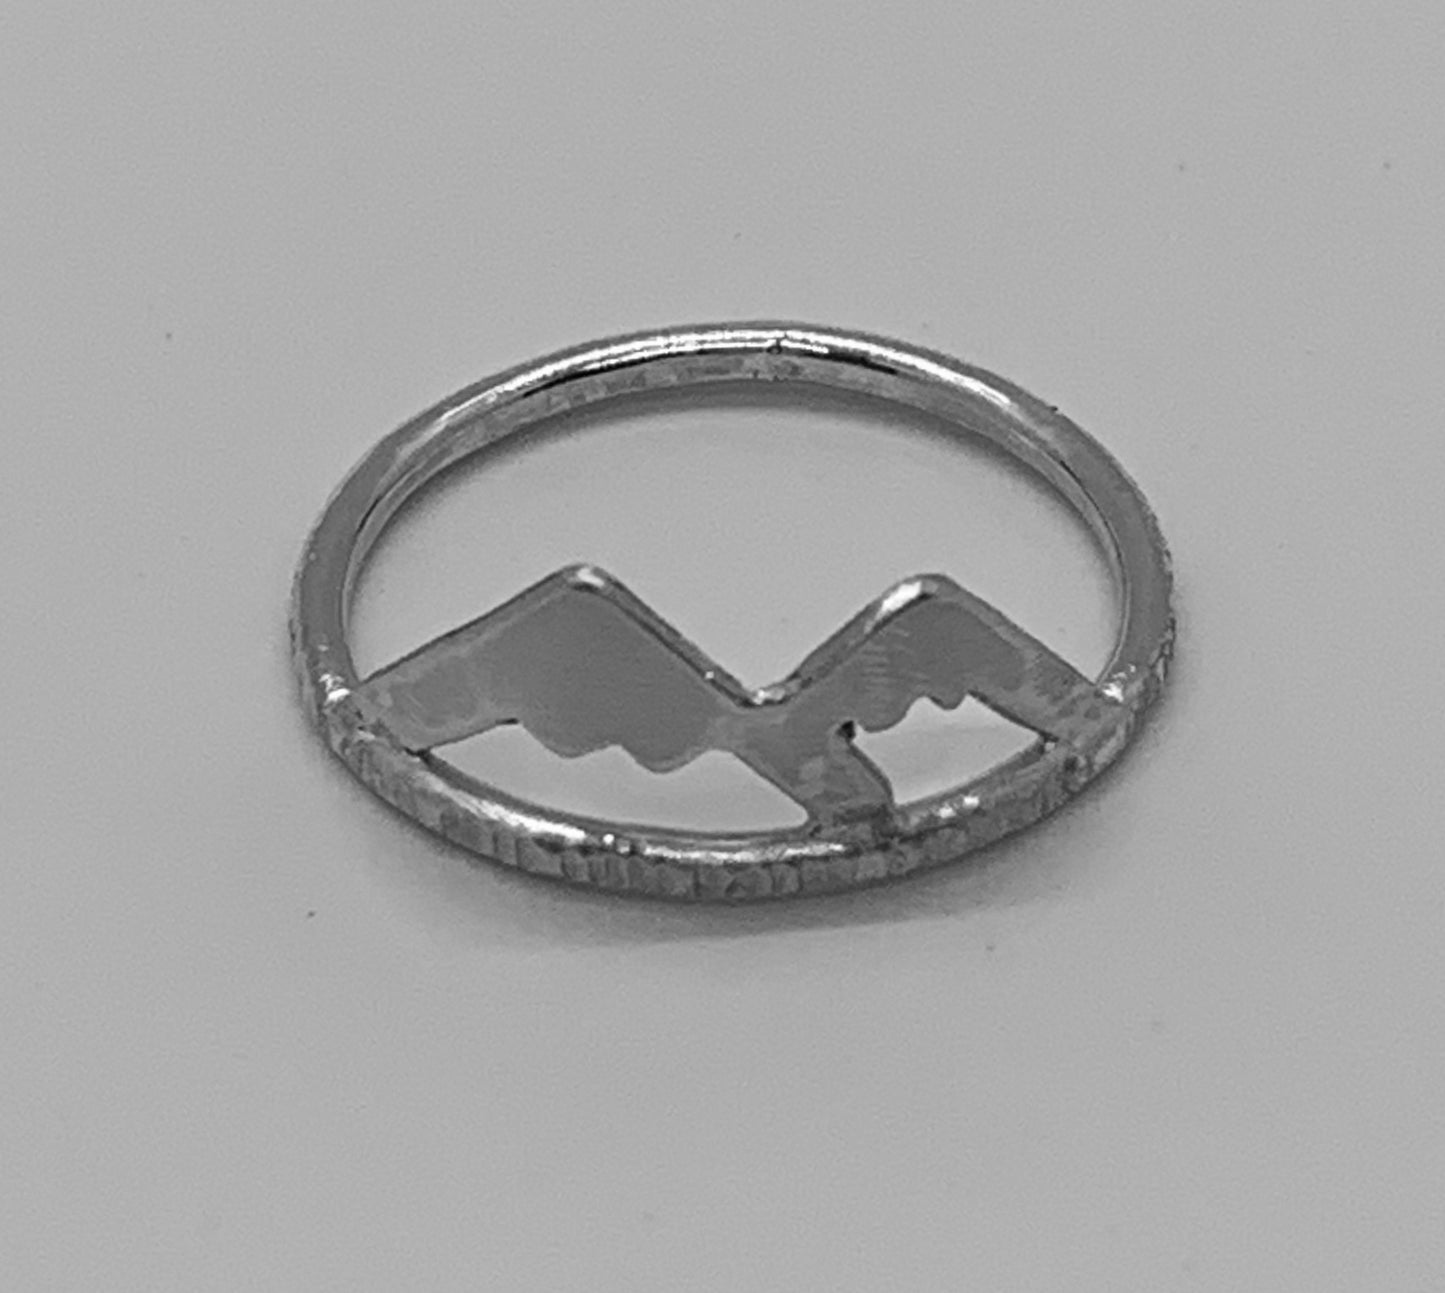 Mountain Range Ring